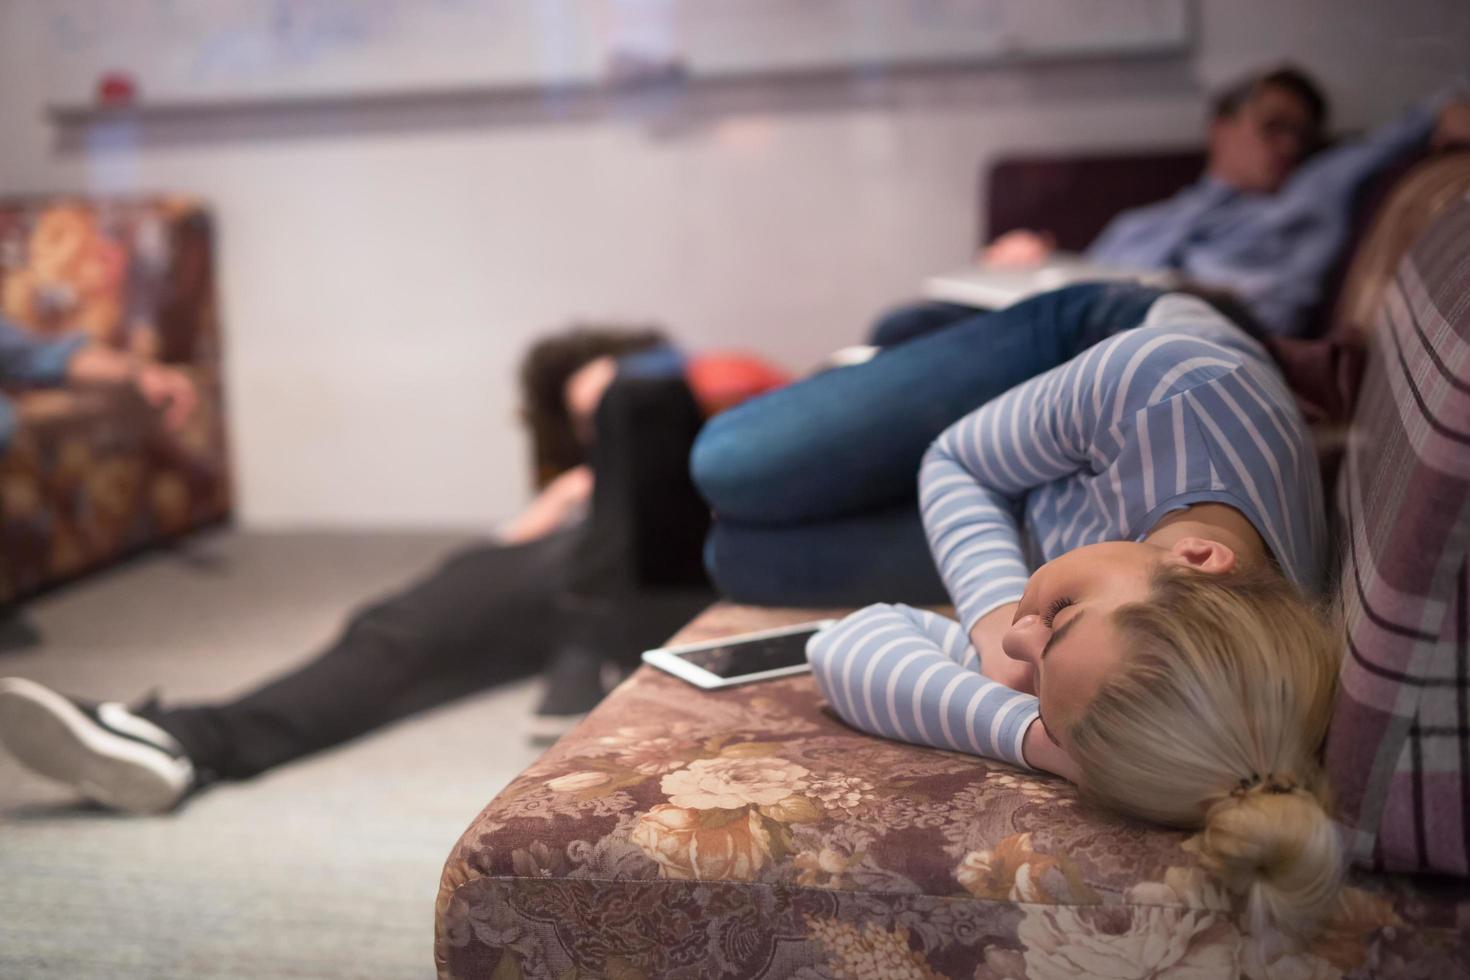 software ontwikkelaars slapen Aan sofa in creatief opstarten kantoor foto